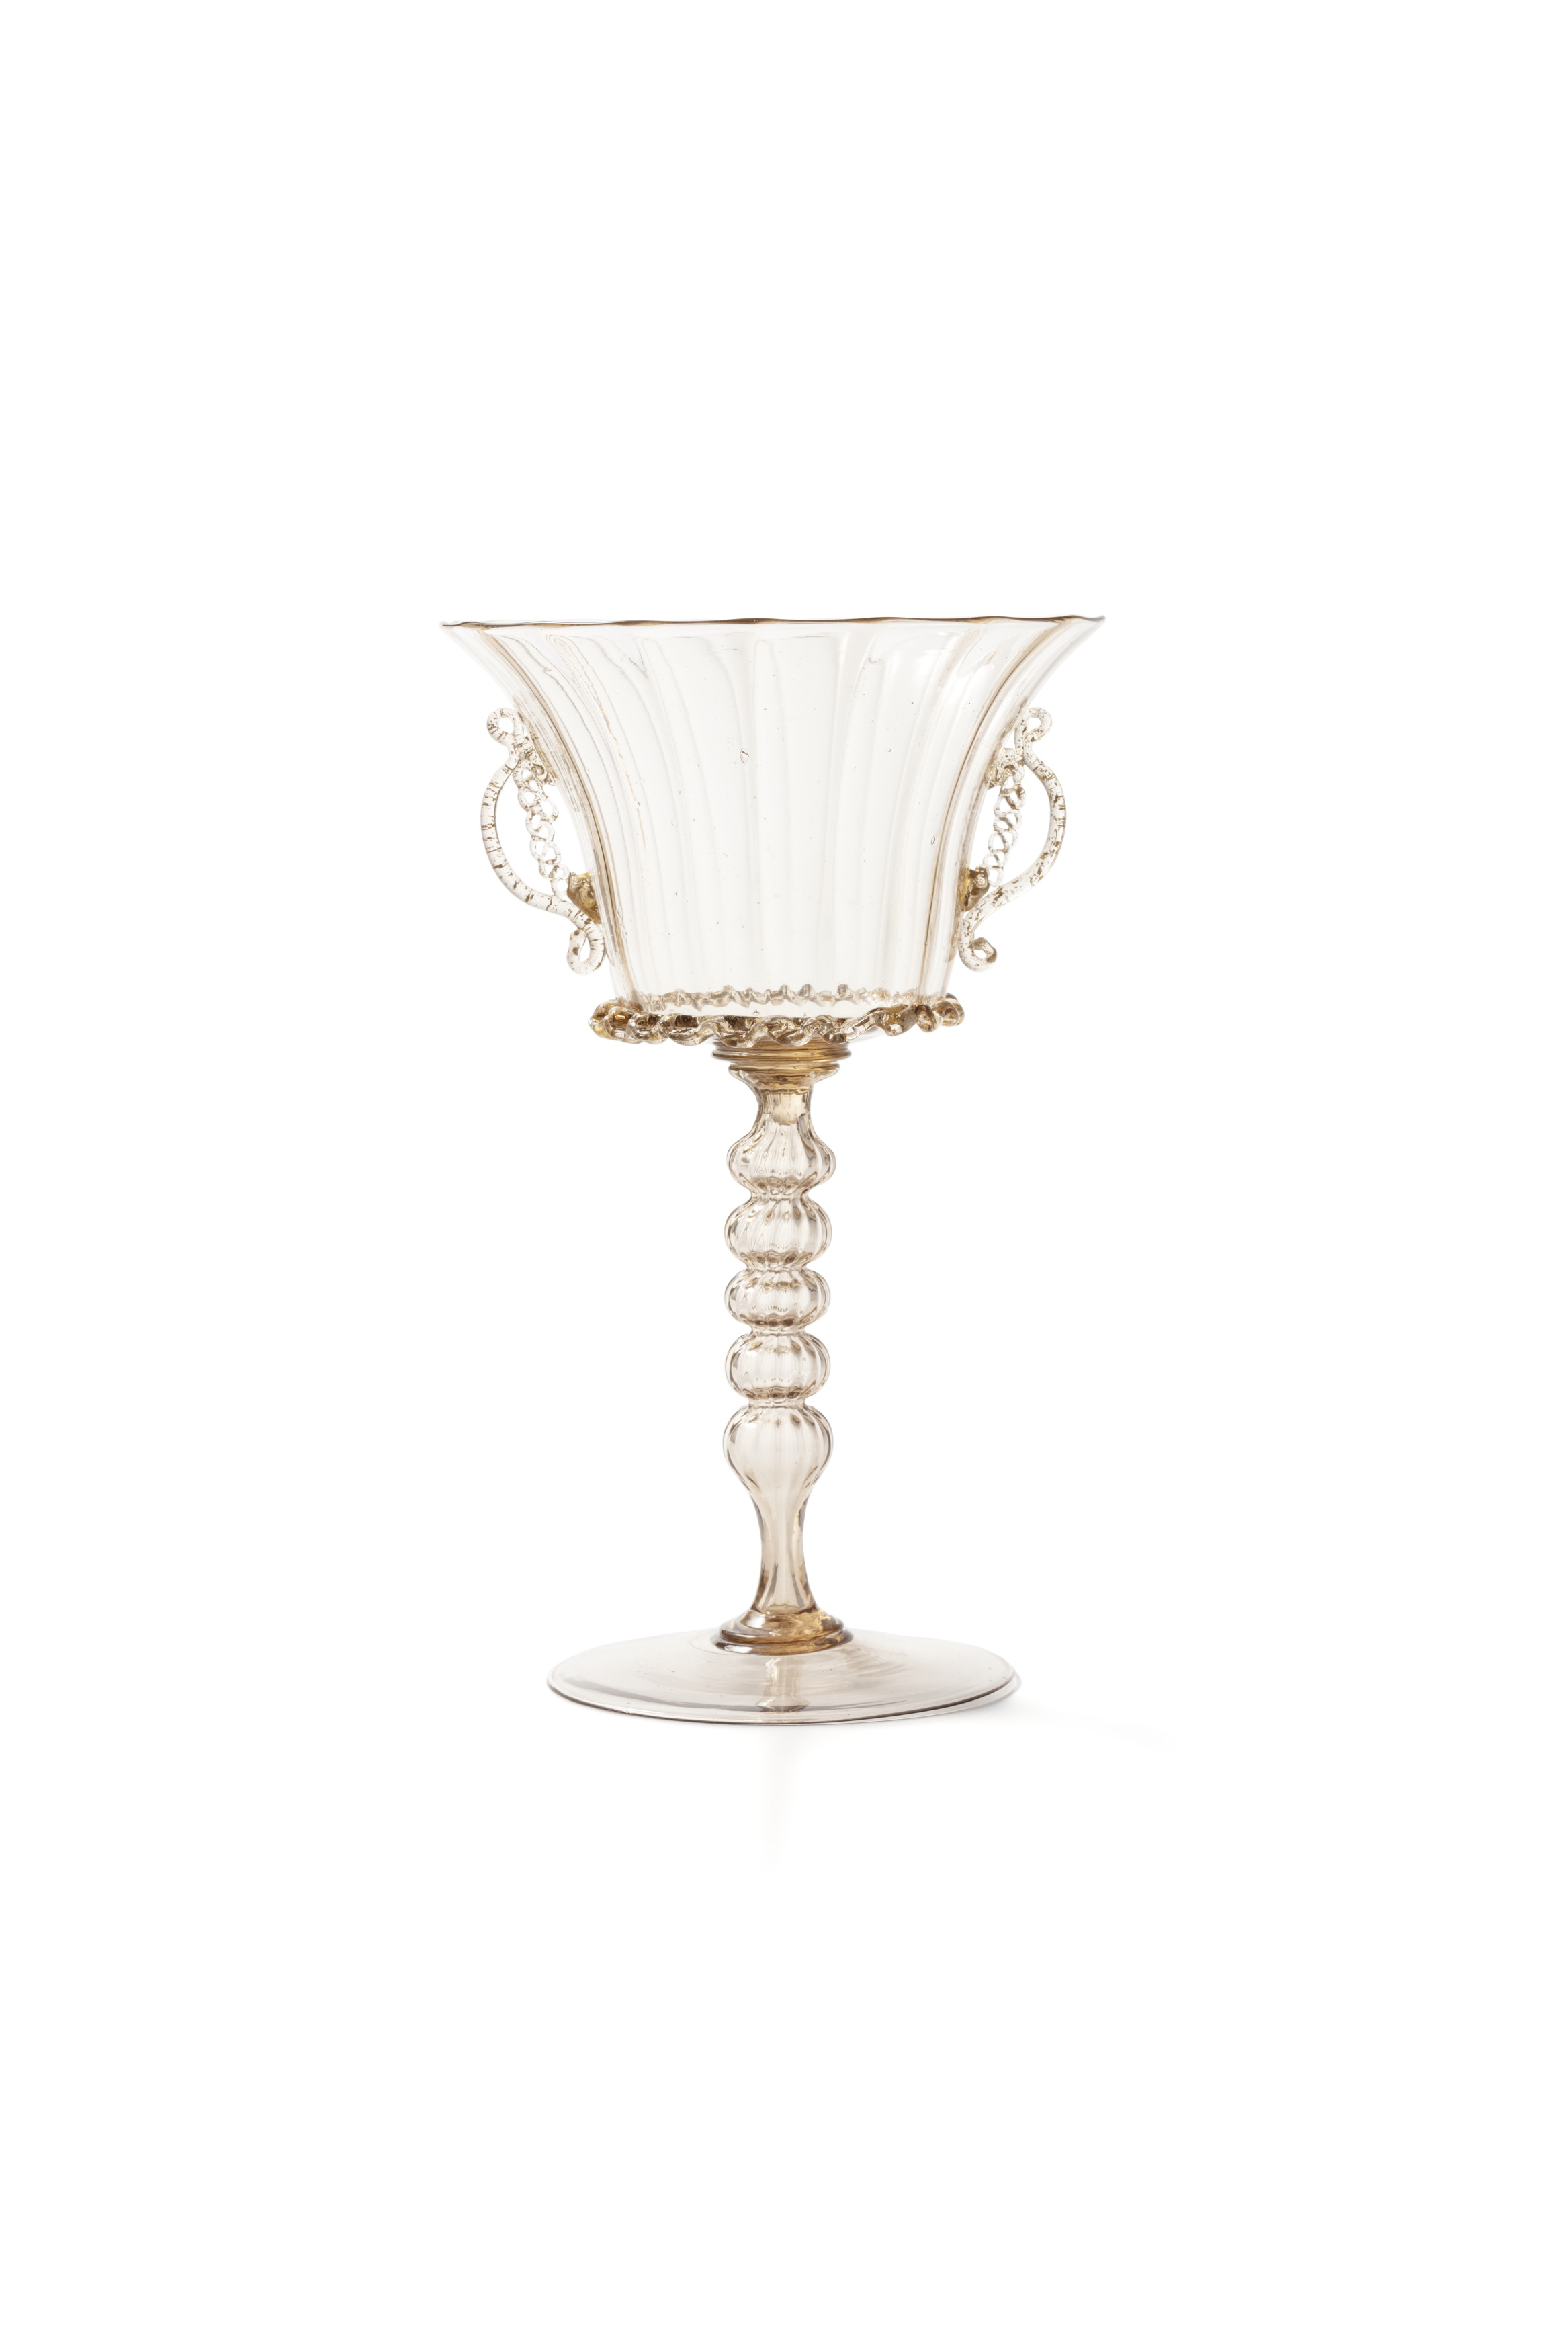 Murano glass goblet